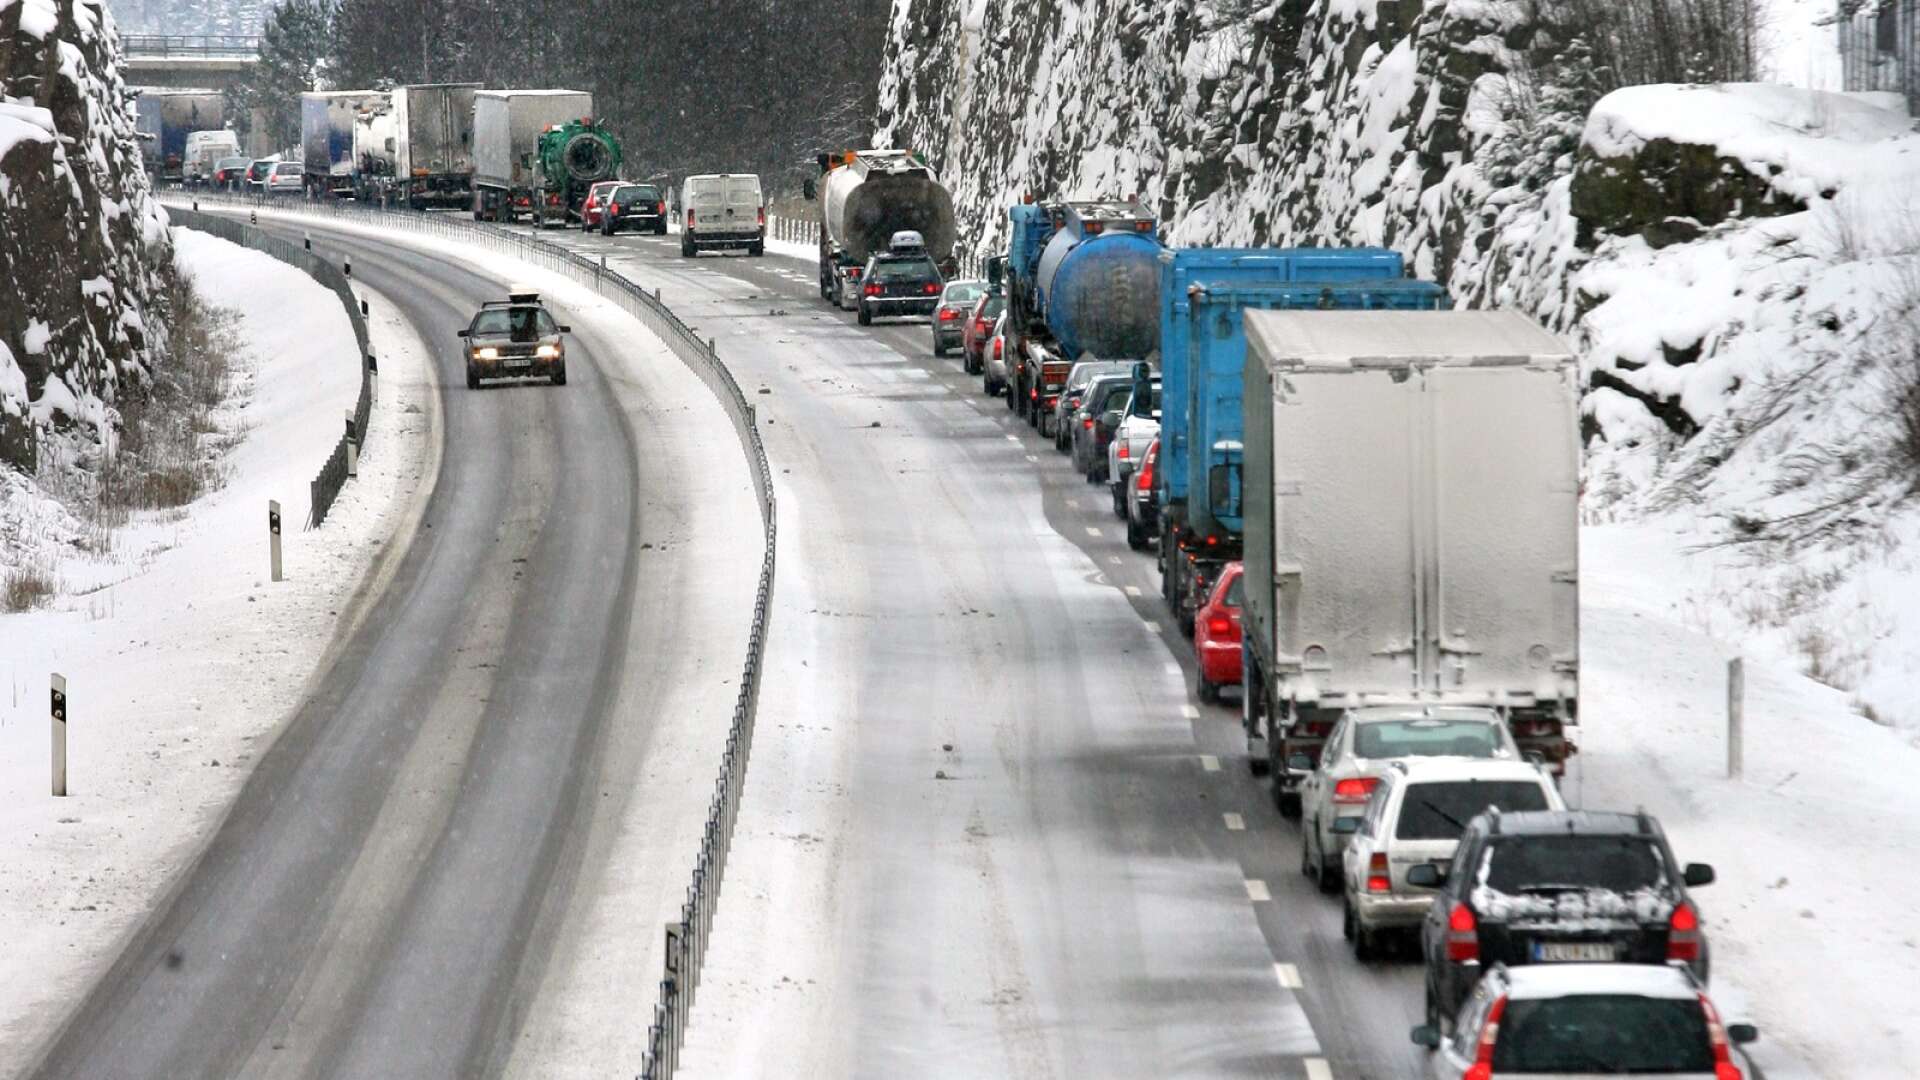 &quot;Transportarbetareförbundet uppmanar alla bilister att visa hänsyn, att ta det lugnt i trafiken nu när det är vinter och julen och nyår står för dörren”, skriver insändarskribenterna.